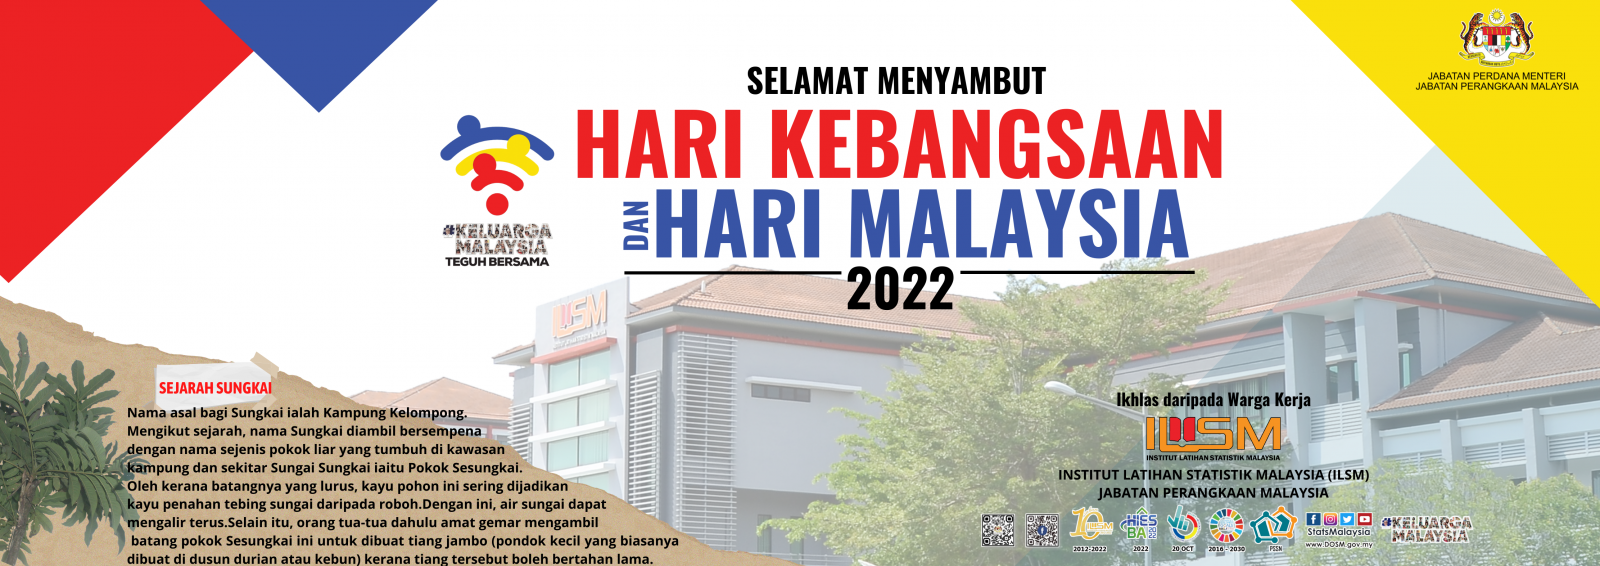 Hari Kemerdekaan dan Hari Malaysia 2022